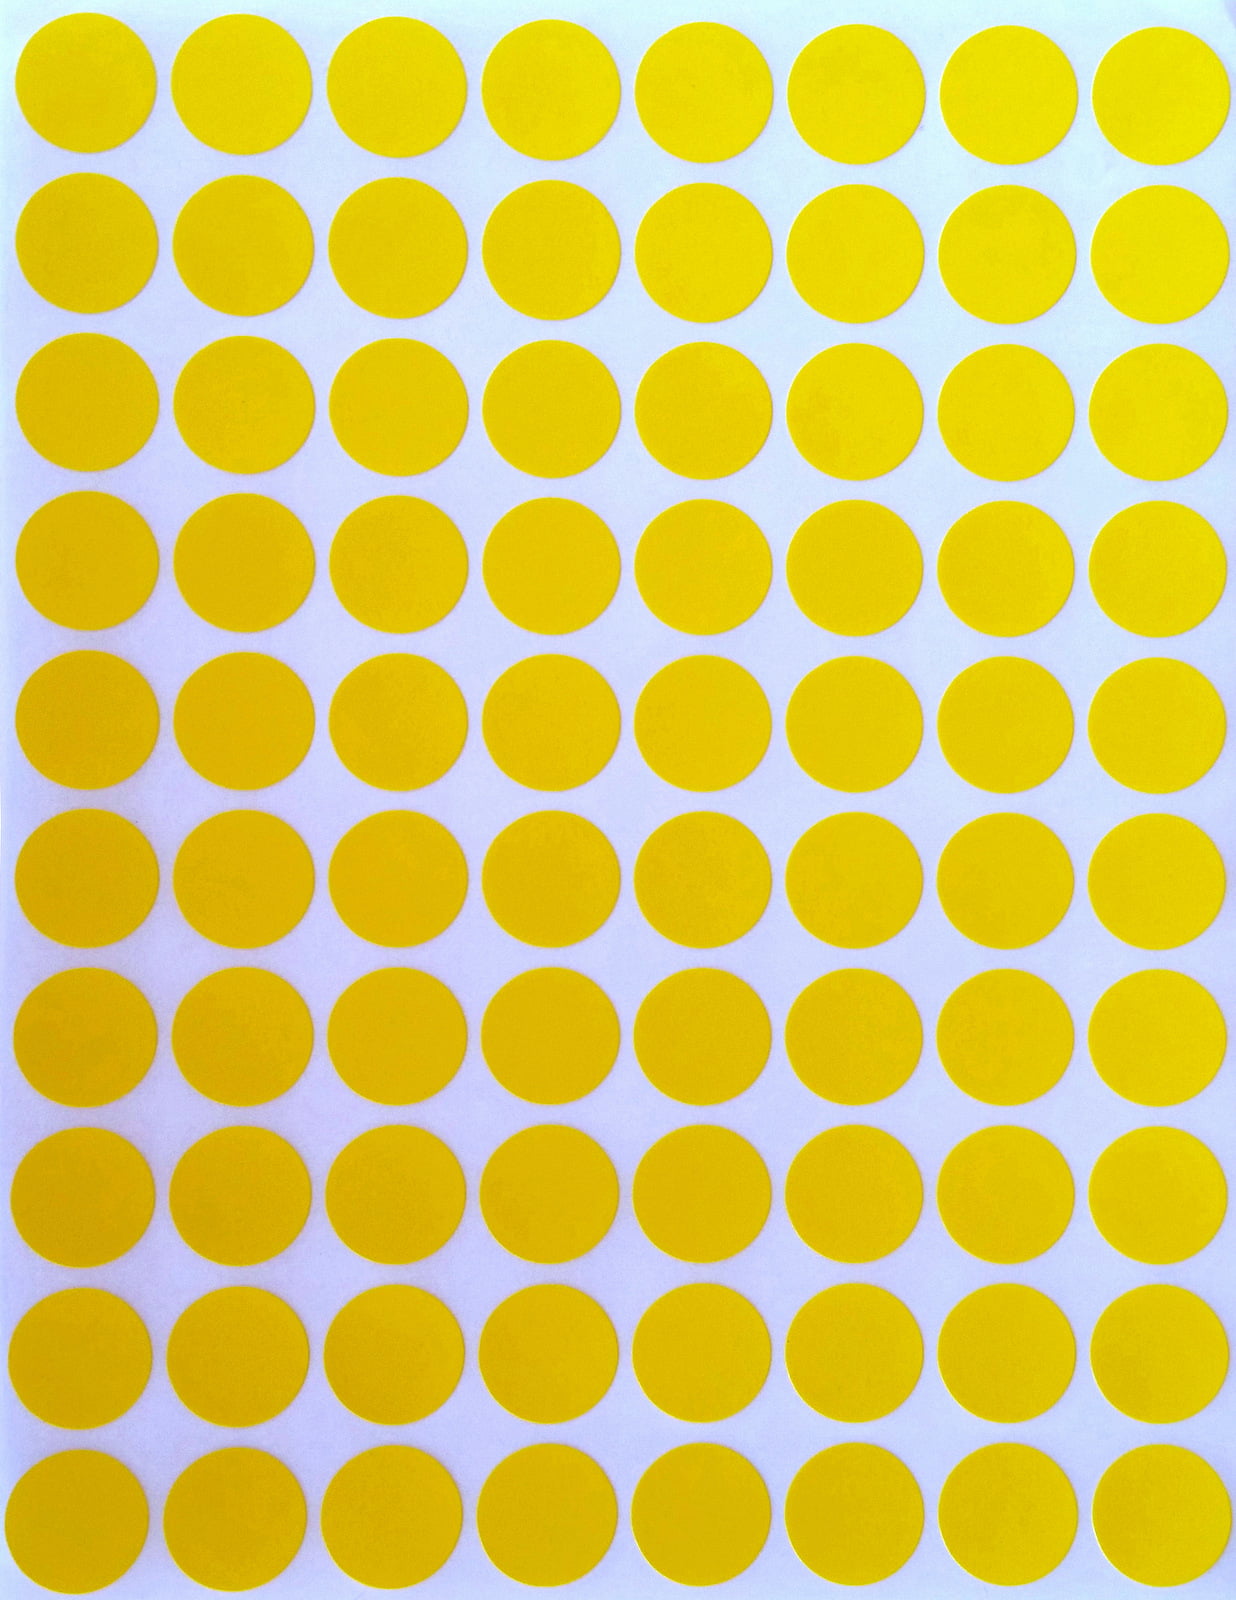 Много маленьких кругов. Желтые кружочки. Круг желтого цвета. Krujochki. Маленькие желтые кружочки.